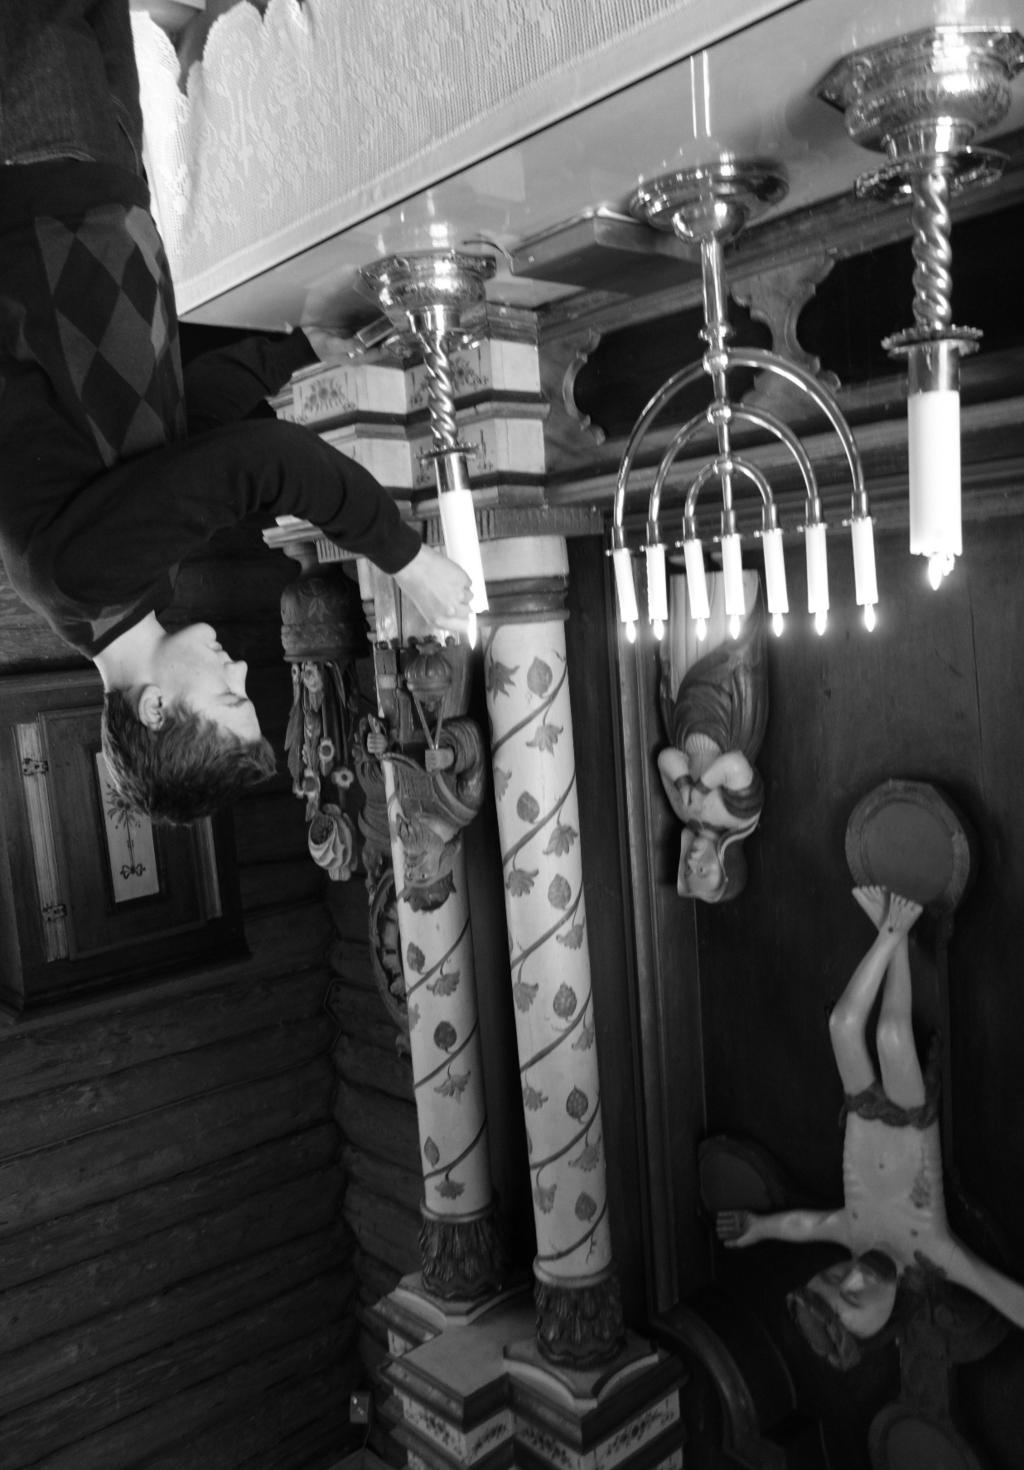 snakker med Ingar Ranheim om jul og juletradisjoner Utstrakt hånd for misjonssamarbeid Aurdal fjellkirke har fått nytt tak Over 90 prosent av de som gravlegges i Valdres er kirkemedlemmer